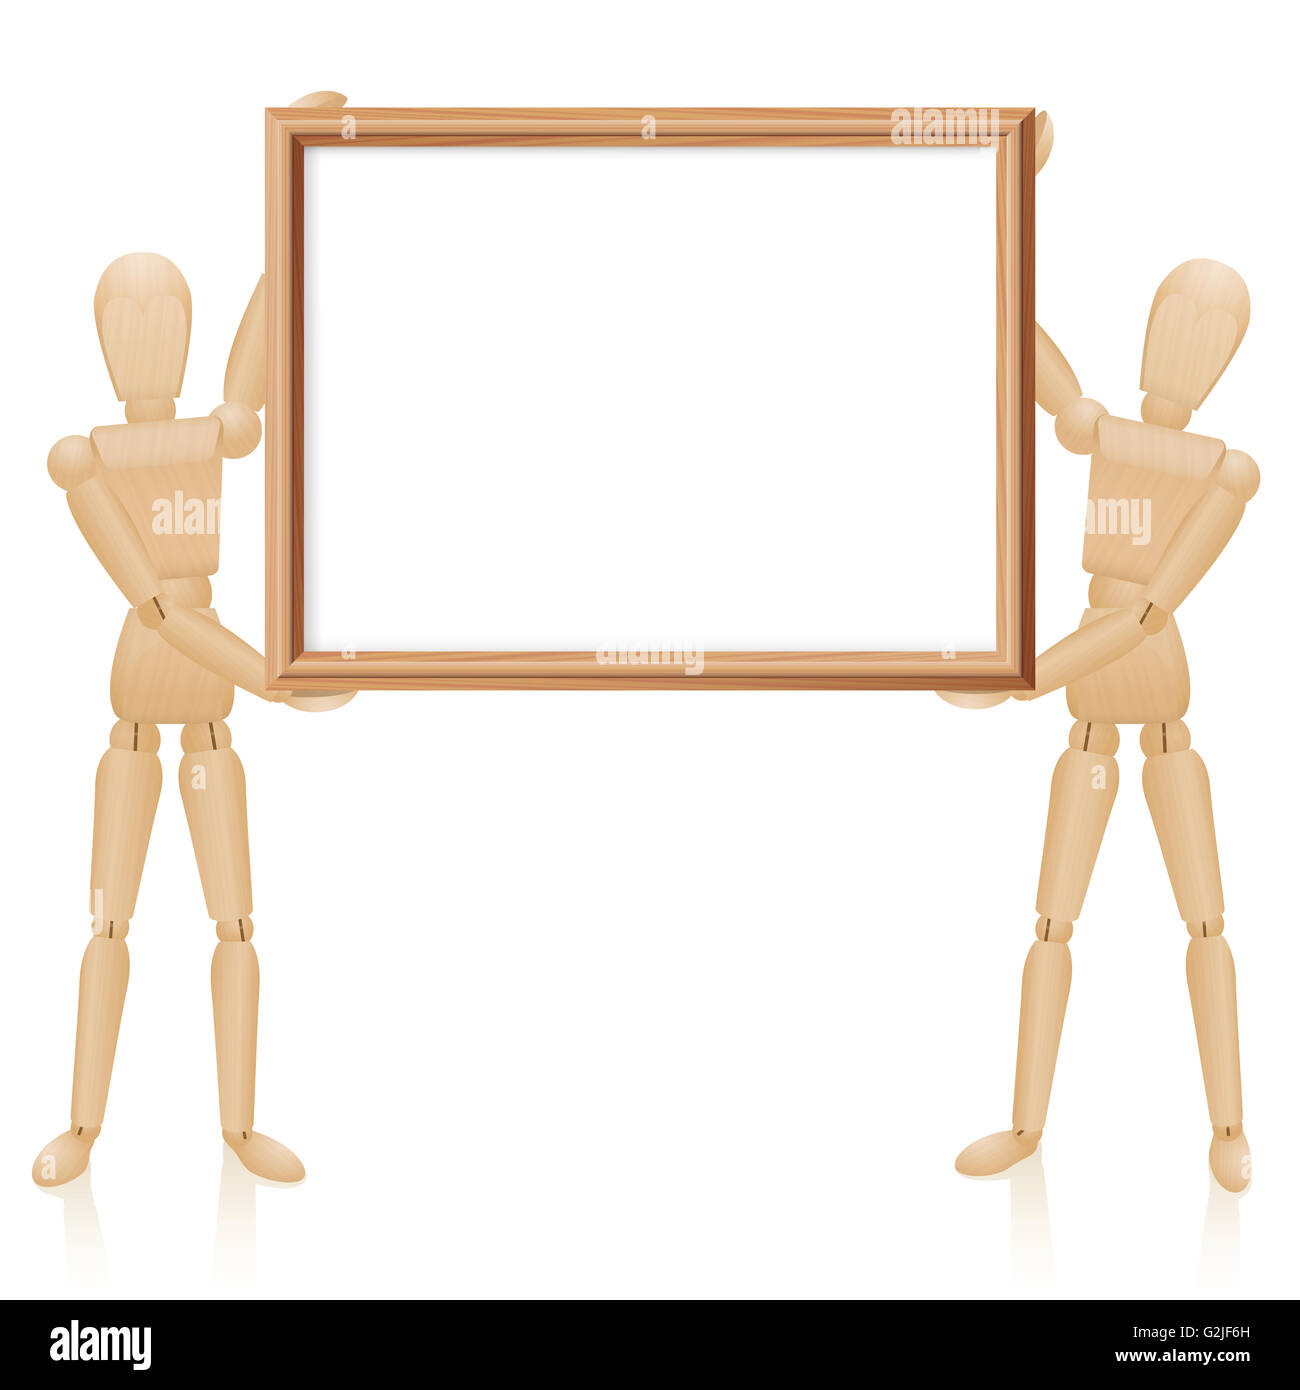 Artista bambole con legno vergine picture frame, formato orizzontale. Illustrazione su sfondo bianco. Foto Stock